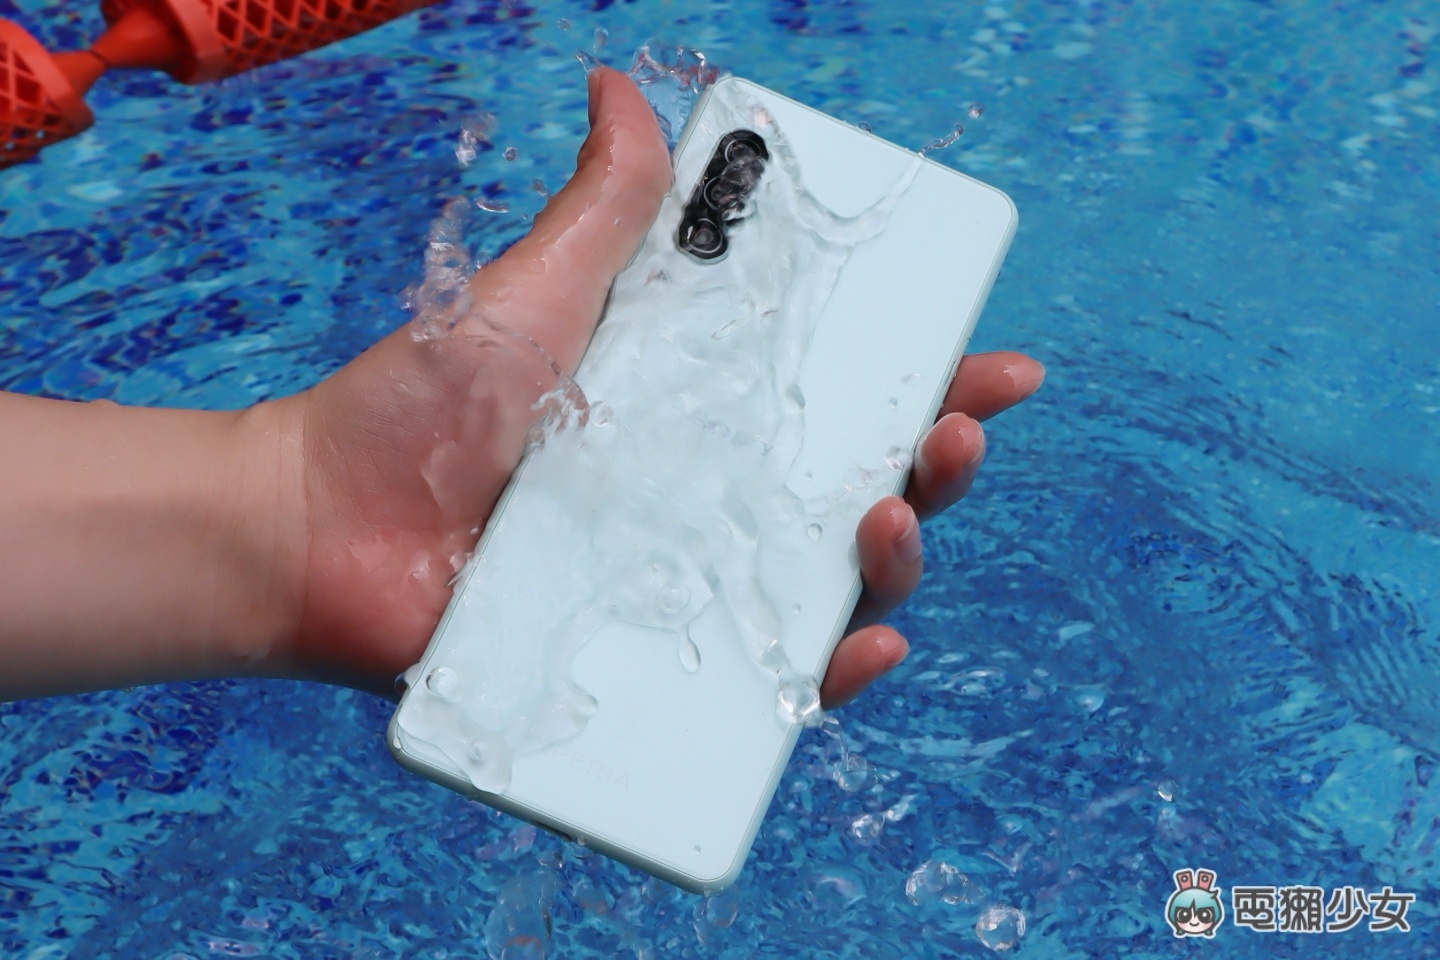 出門｜Sony Xperia 10 II 在台發表！最高規格的防水防塵 手機掉進水裡也沒關係 售價 11,490 台幣